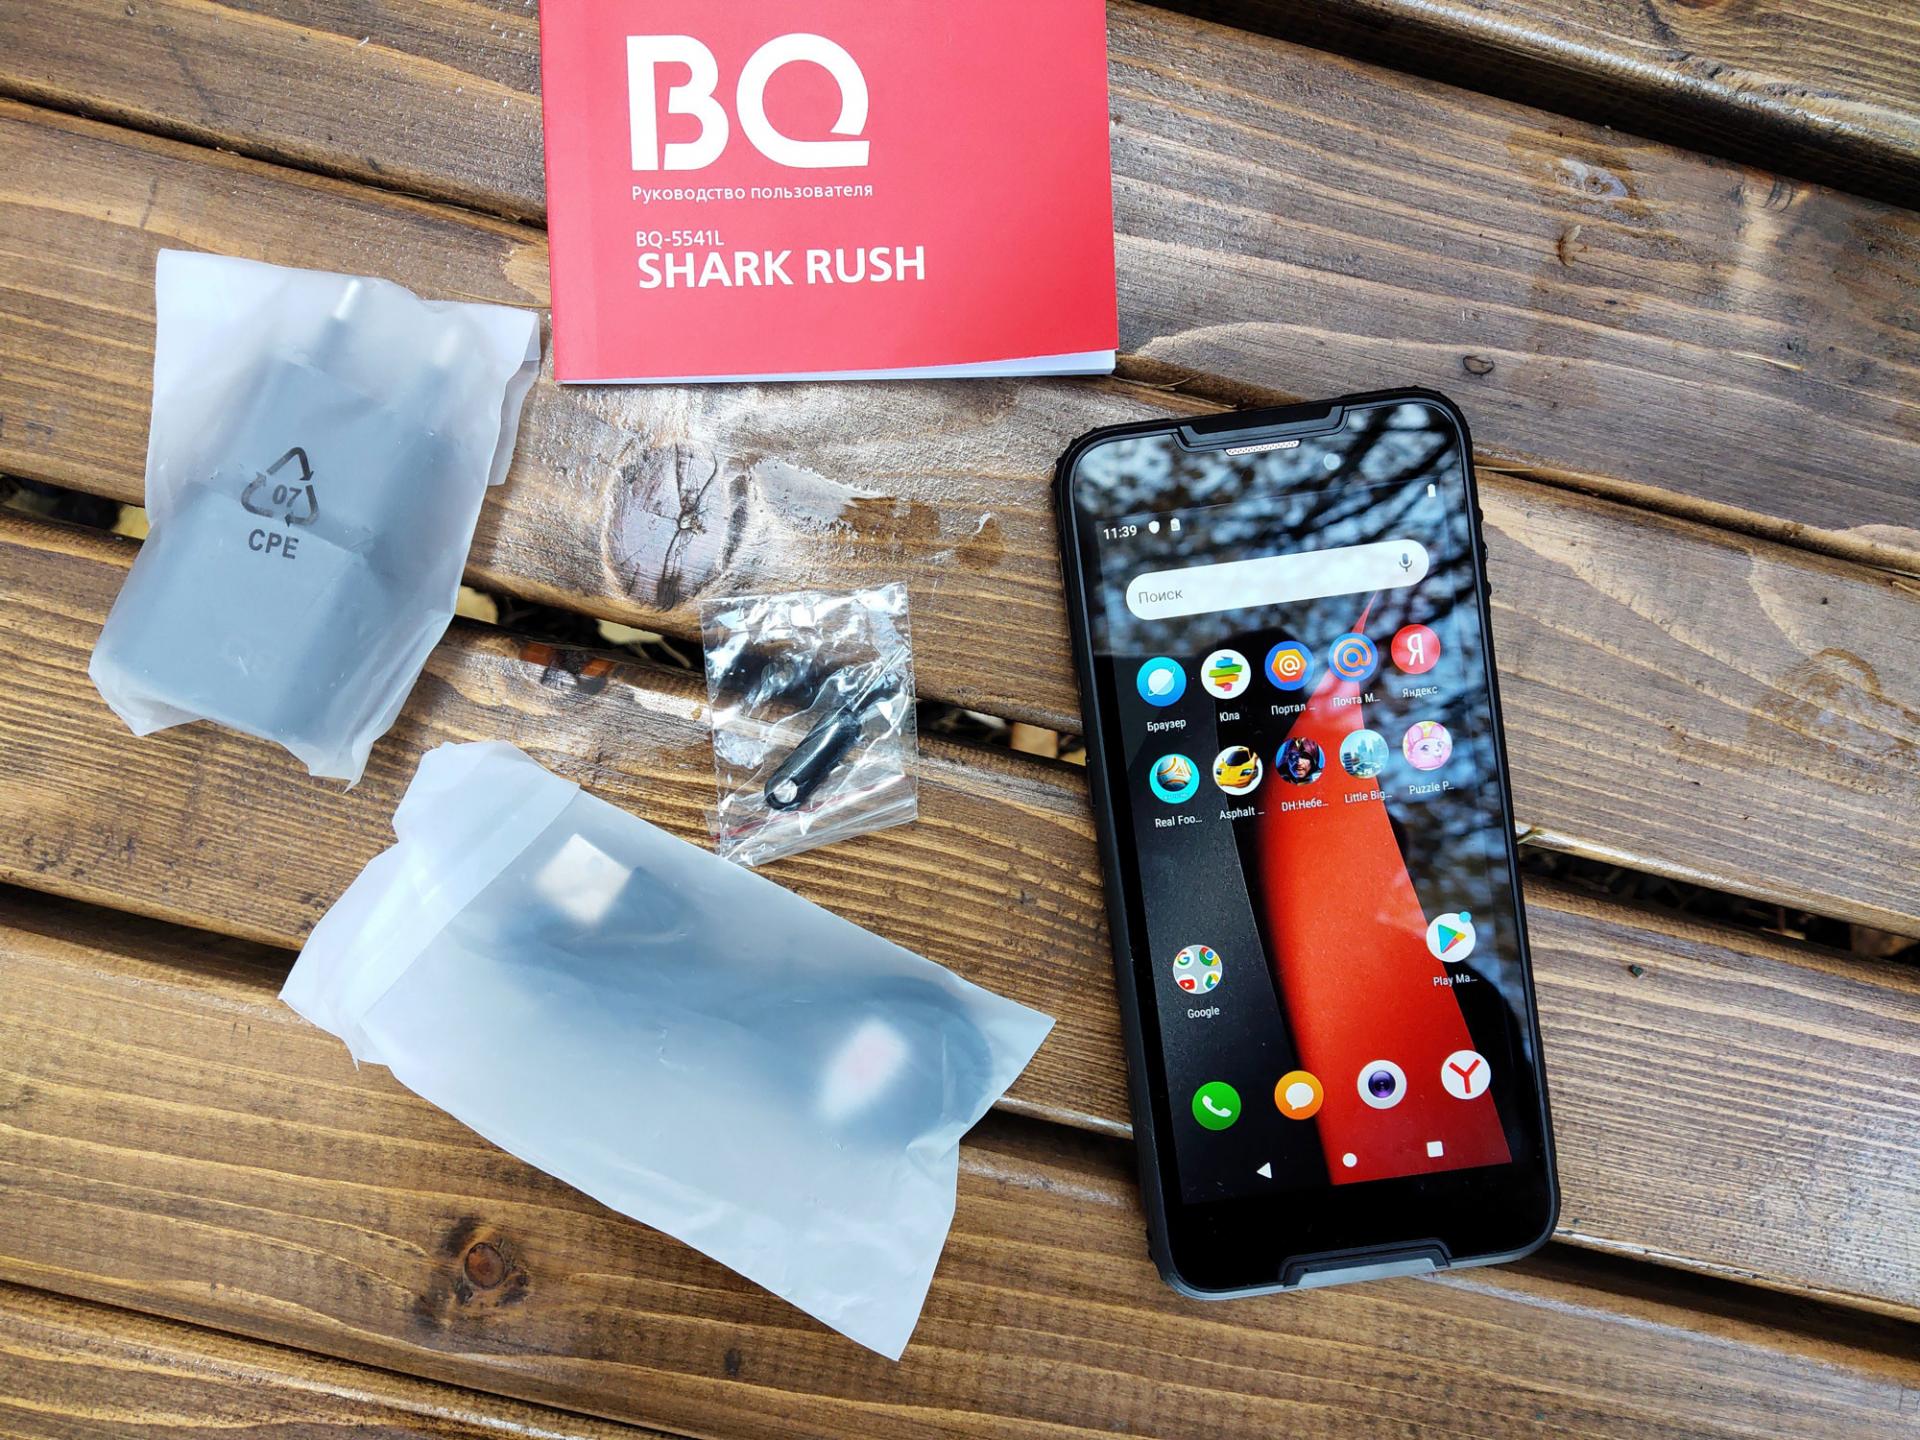 Обзор защищённого смартфона BQ Shark Rush (5541L)